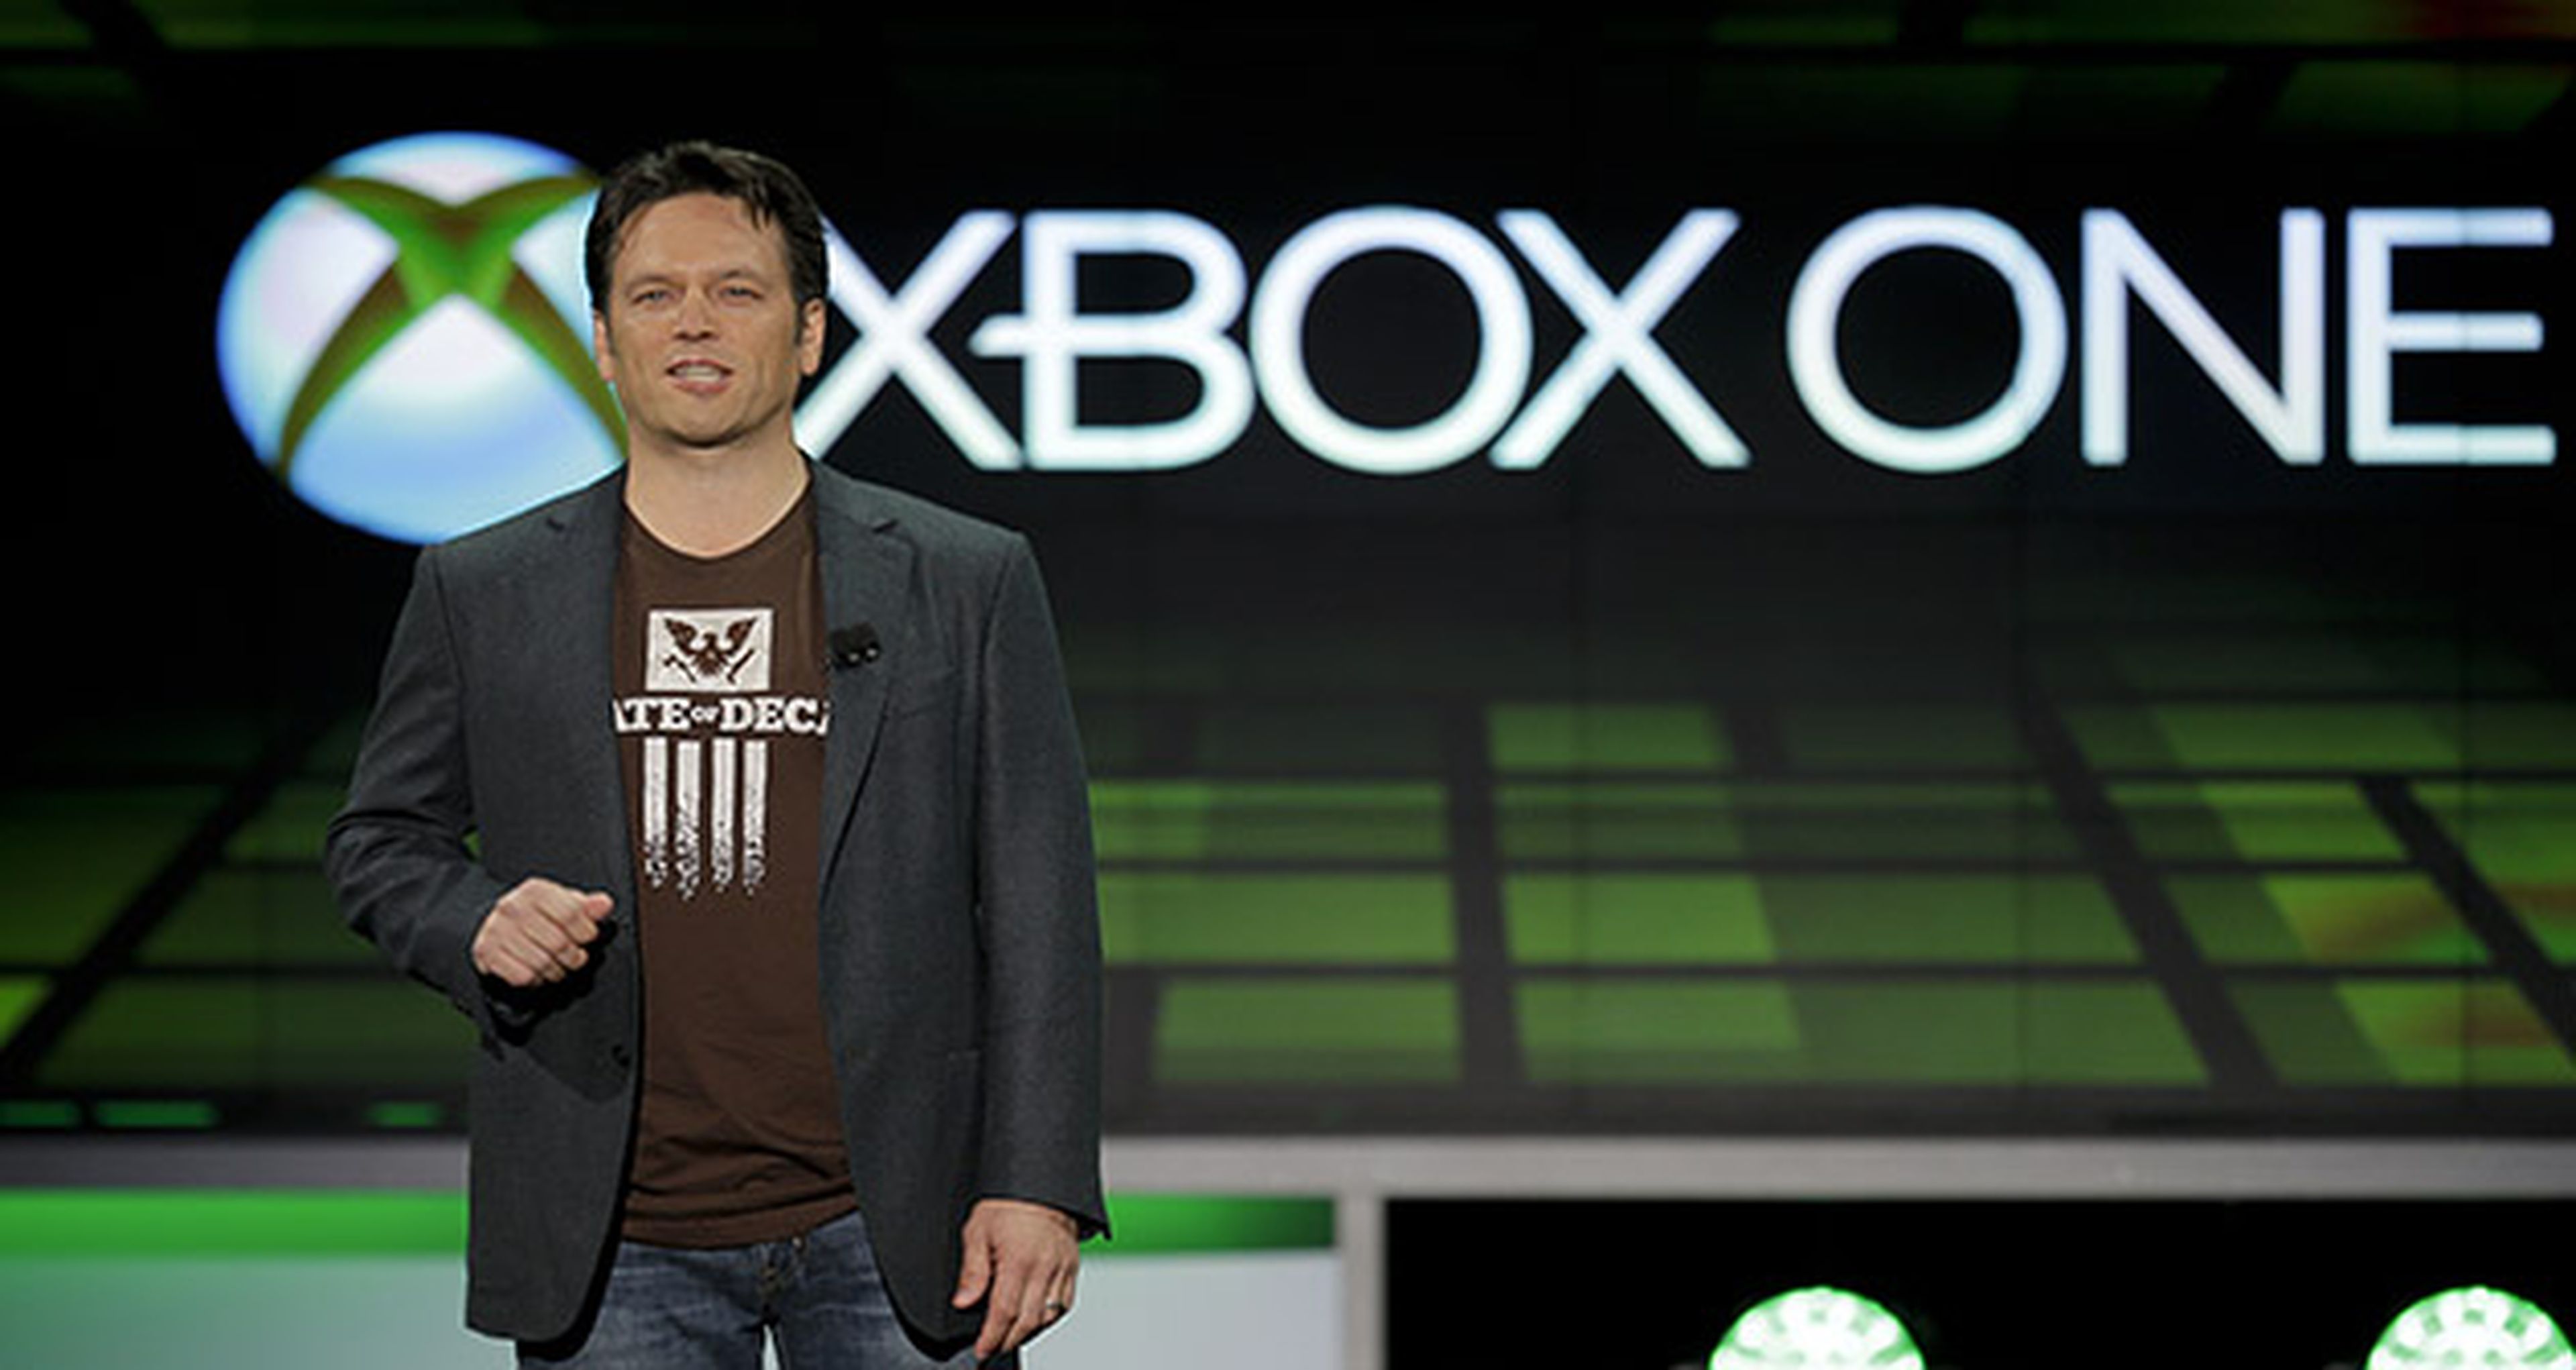 Phil Spencer anuncia muchas sorpresas para Xbox One en 2015